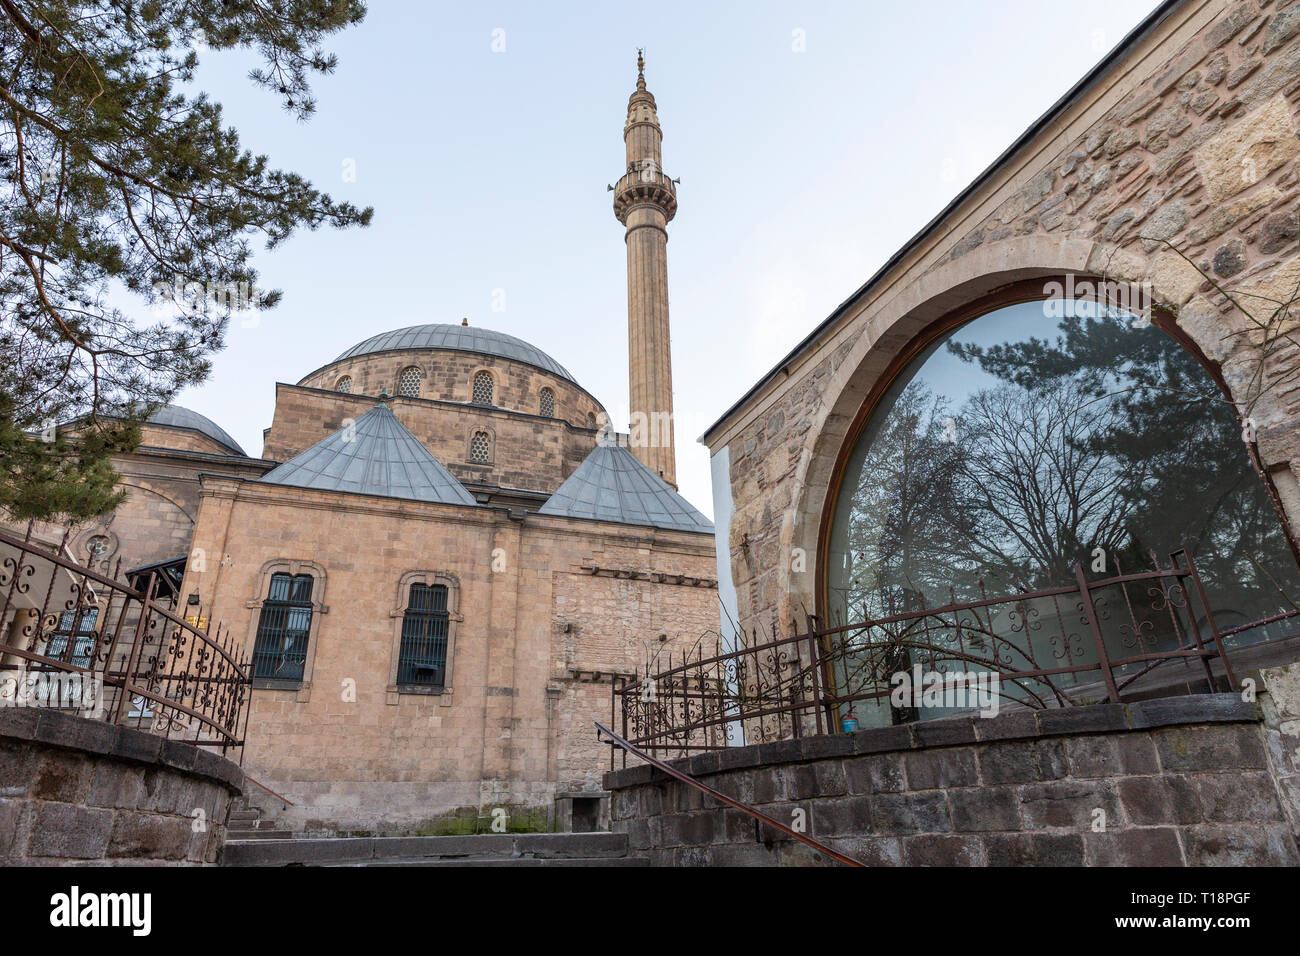 La moschea Mevlevi vista in Afyonkarahisar. Moschea è uno dei più importanti luoghi di holly dopo Konya. Afyonkarahisar è una città nella Turchia occidentale. Foto Stock